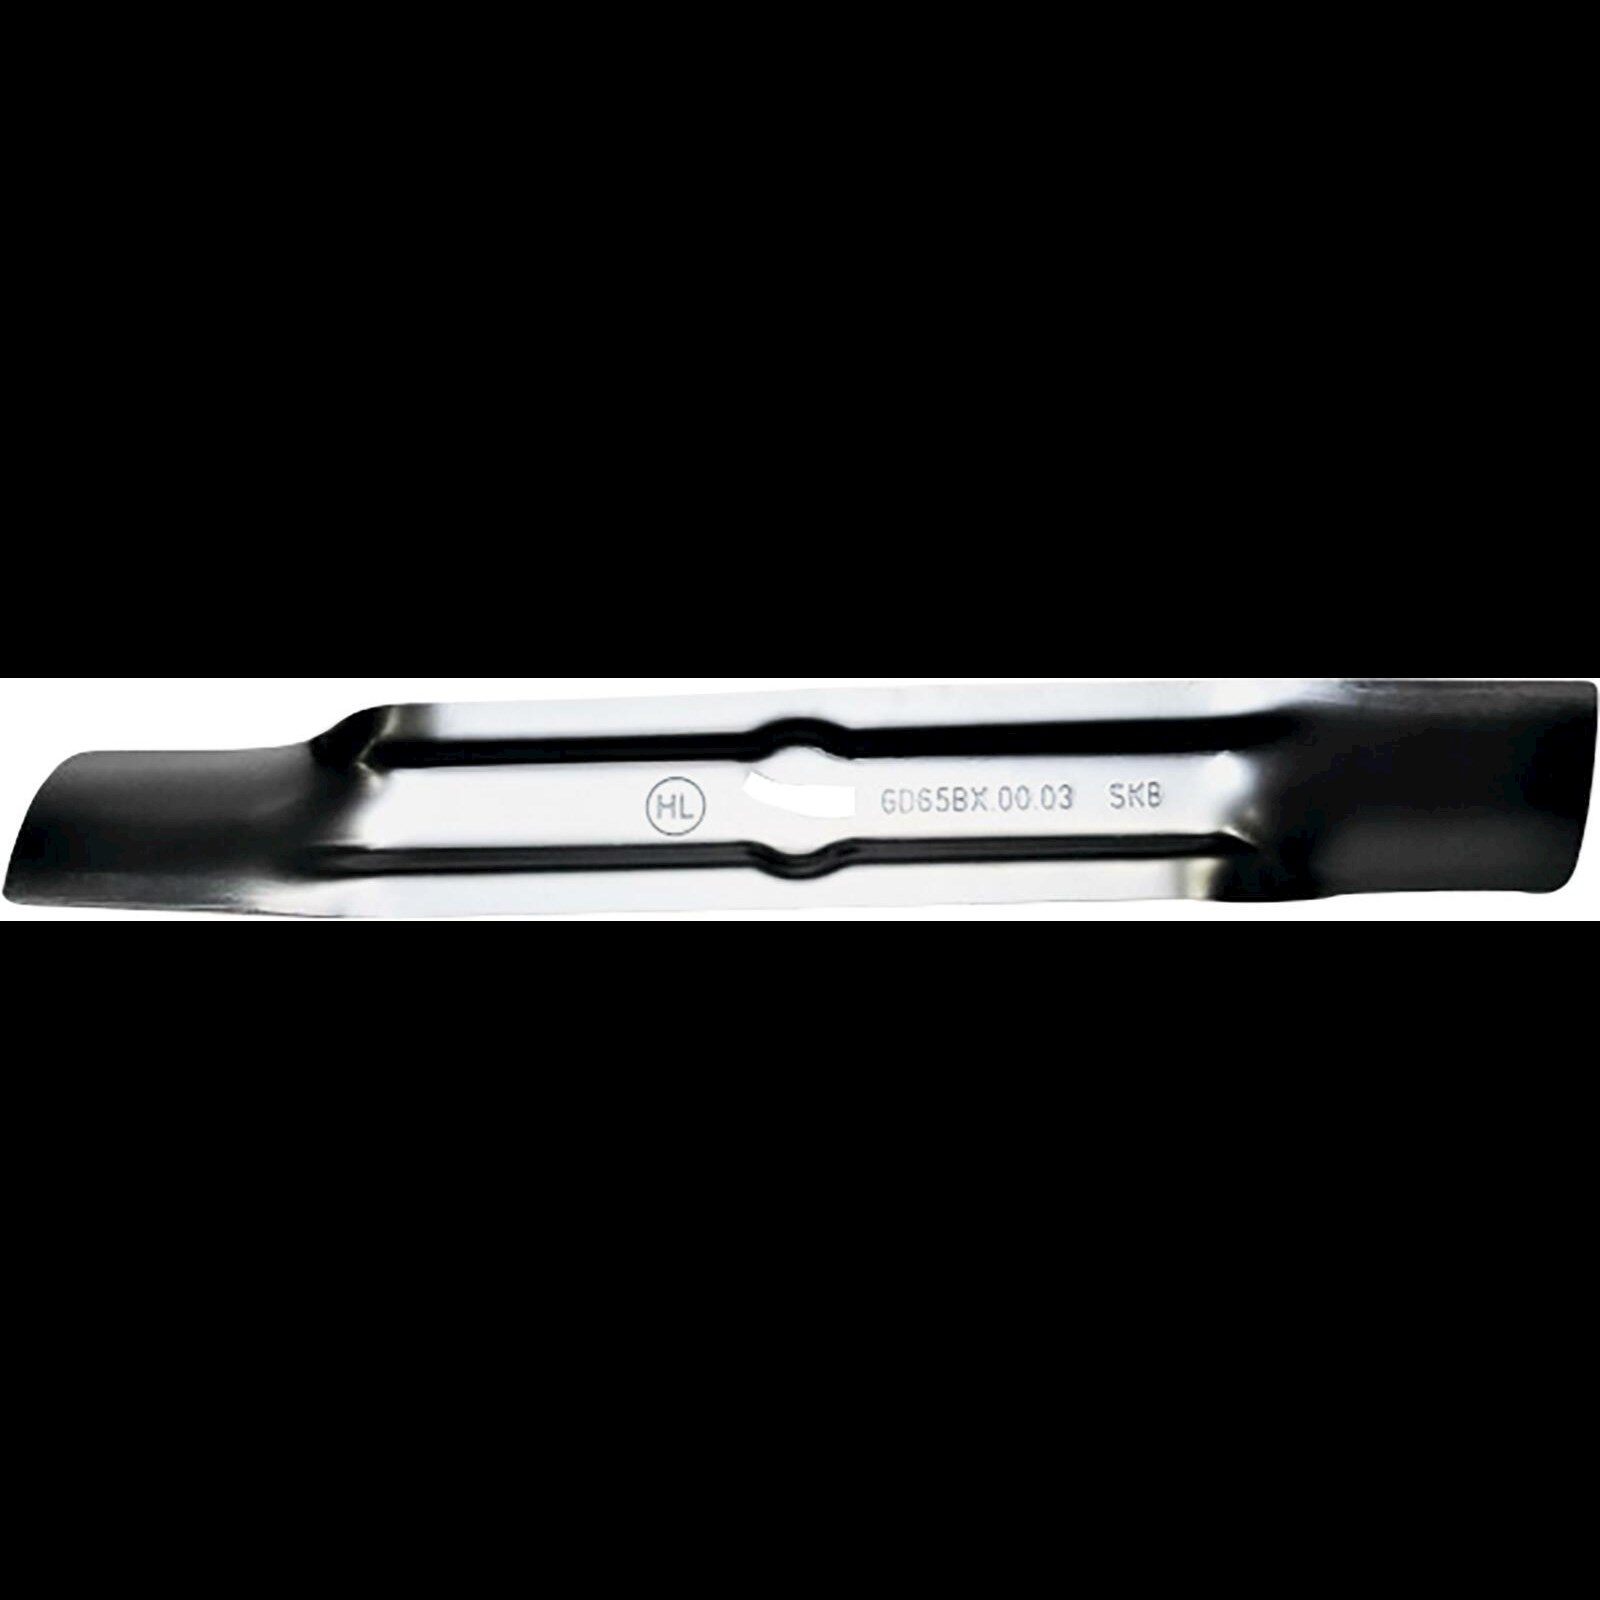 Couteau d'office ondulé 8 cm Acheter - Accessoires de cuisine - LANDI